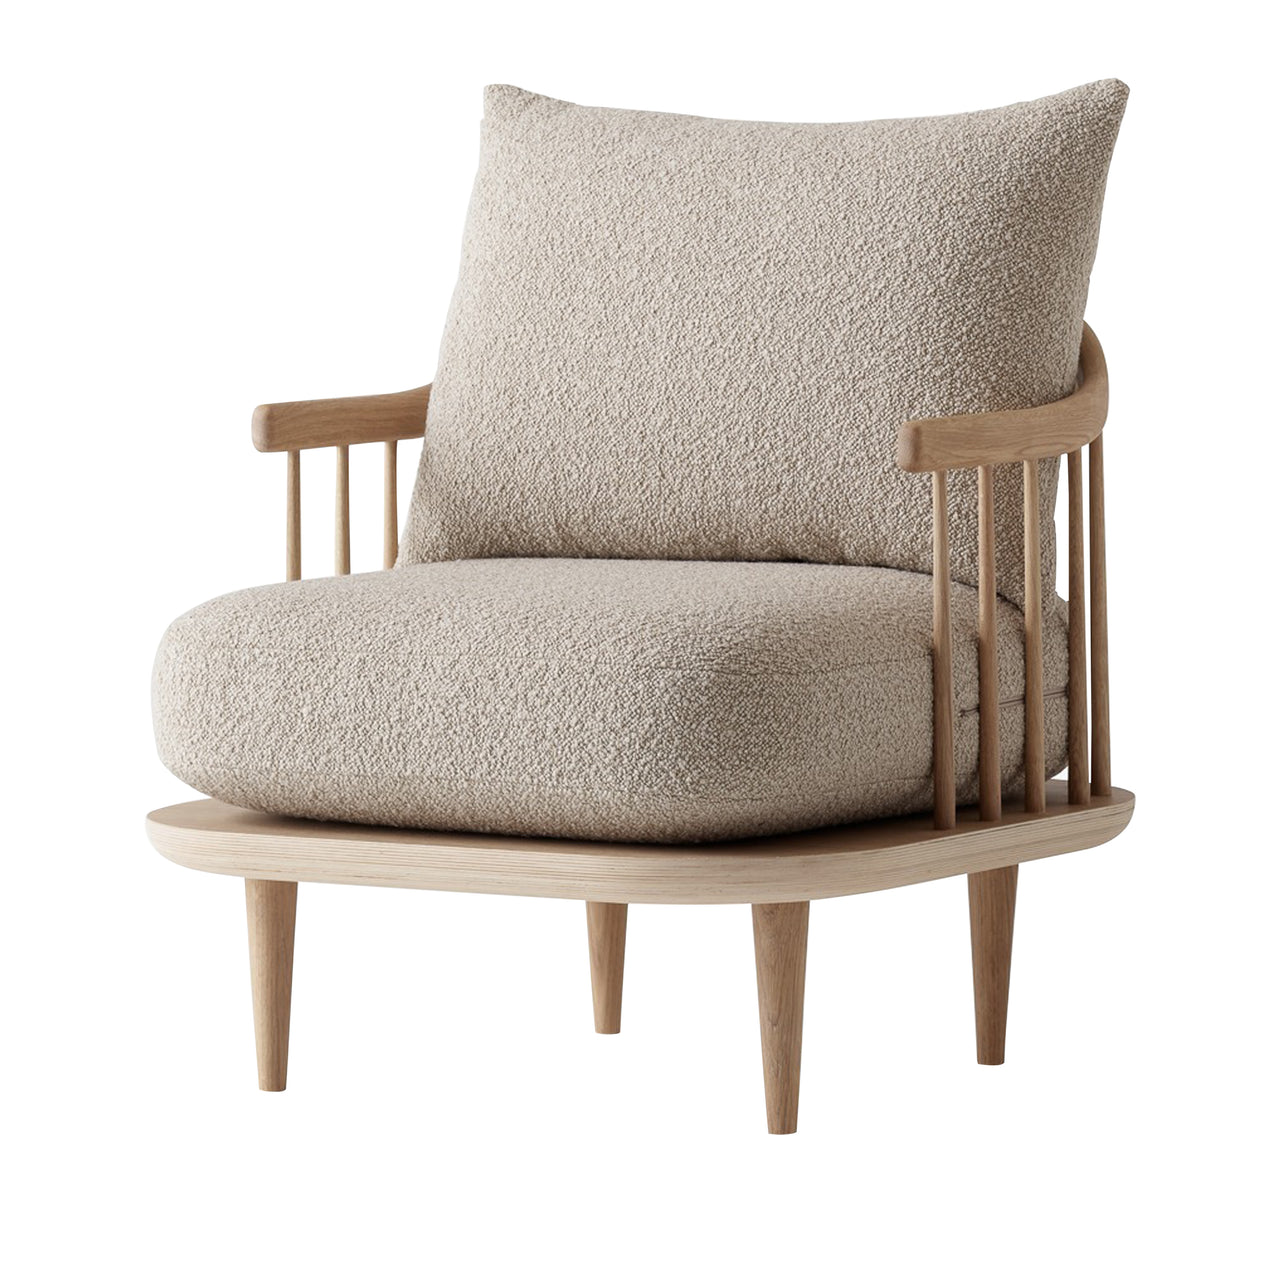 Fly Series SC10 Lounge Chair: White Oiled Oak + Karakorum 003